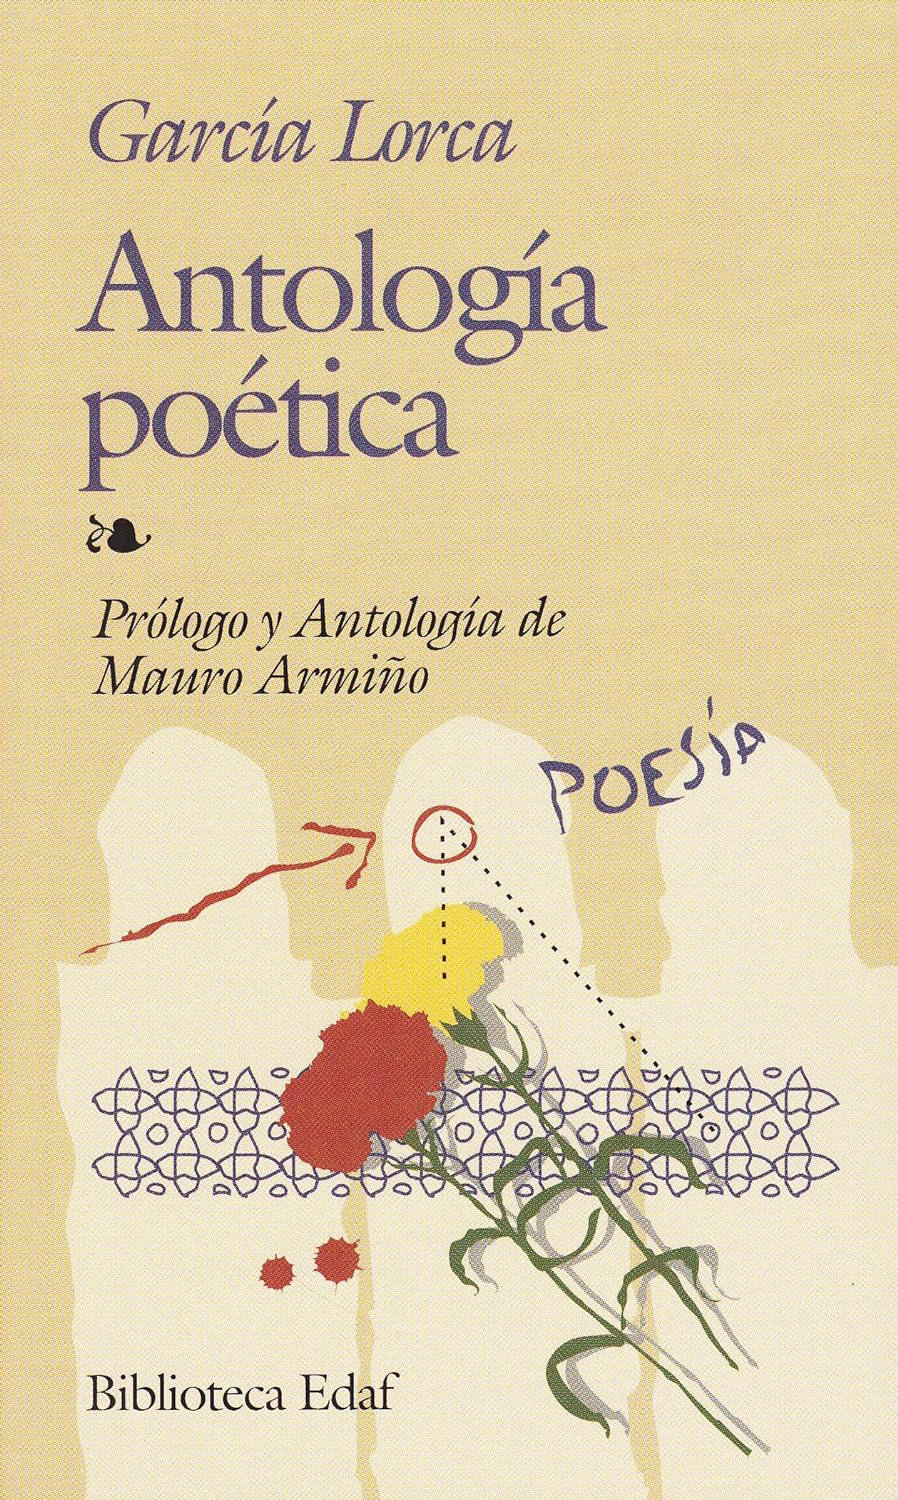 Federico García Lorca, Mauro Armiño (antólogo y prólogo): Antología poética (Español language, 1981, Editorial EDAF)